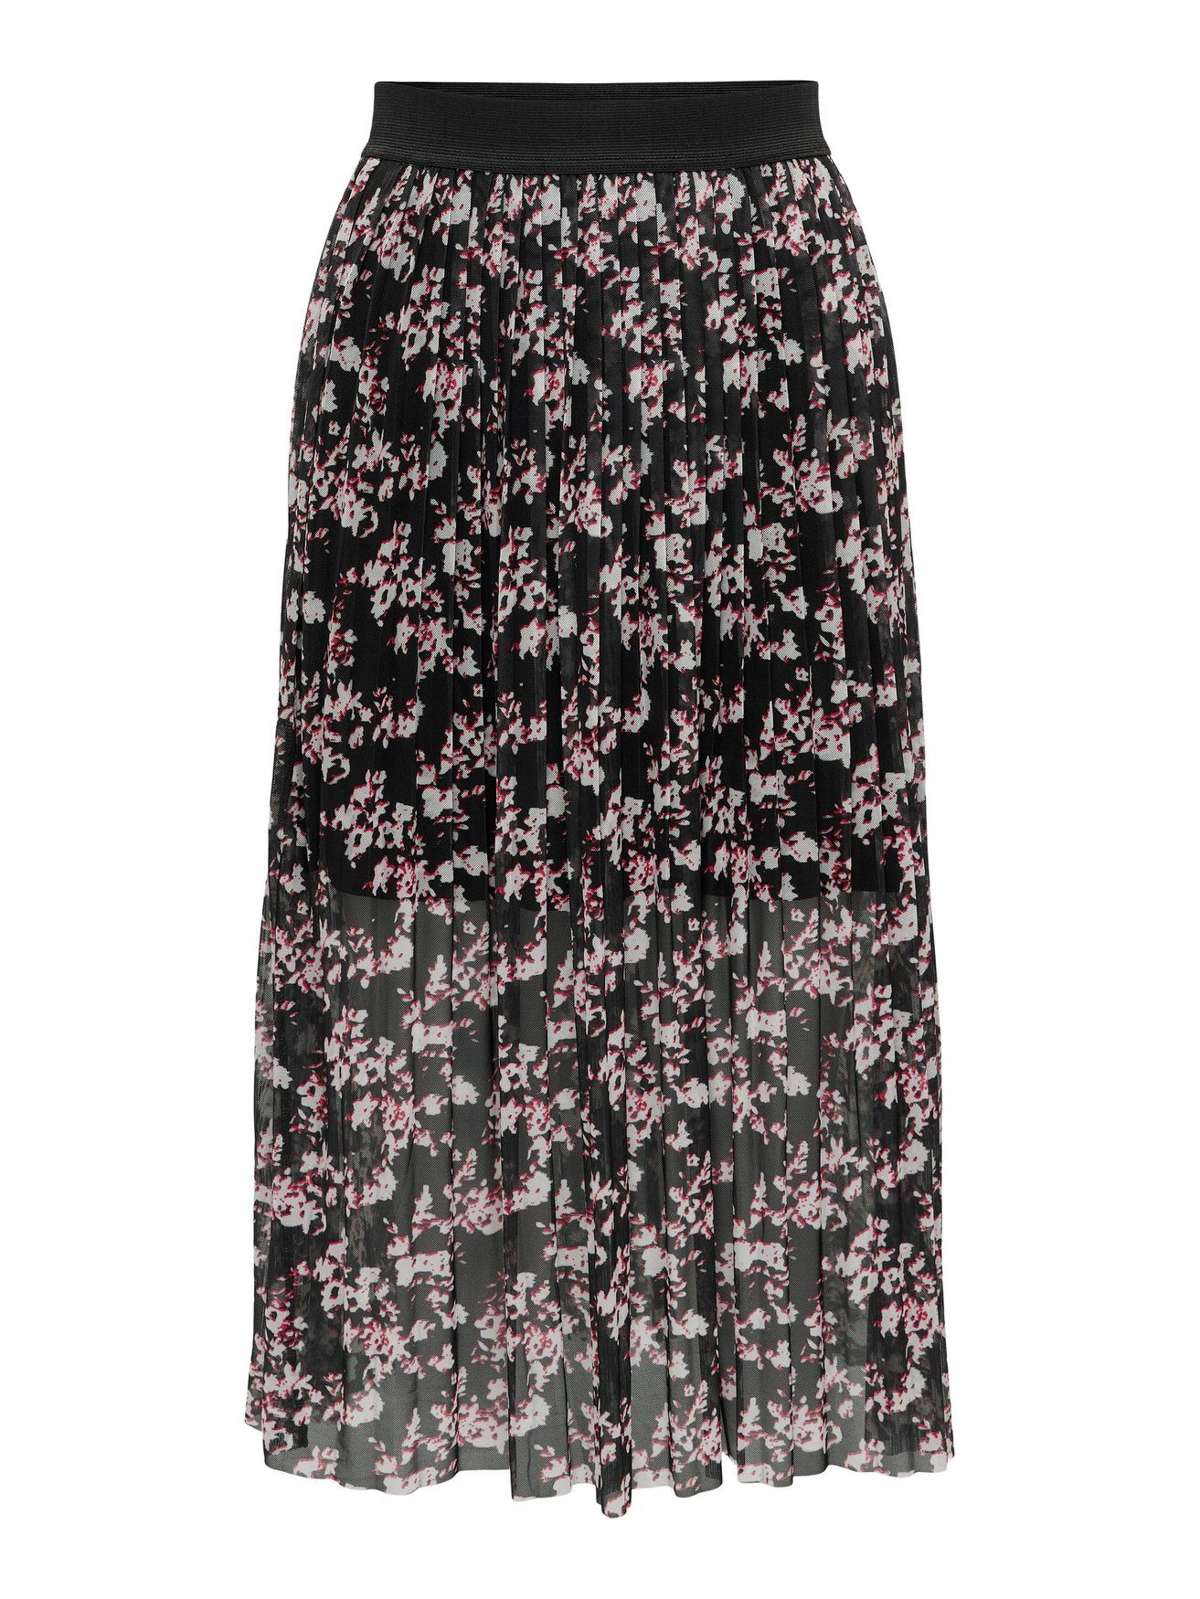 Летняя юбка плиссированная юбка трикотажная юбка миди длинная плиссированная юбка с эластичным поясом 6206 черного цвета-6